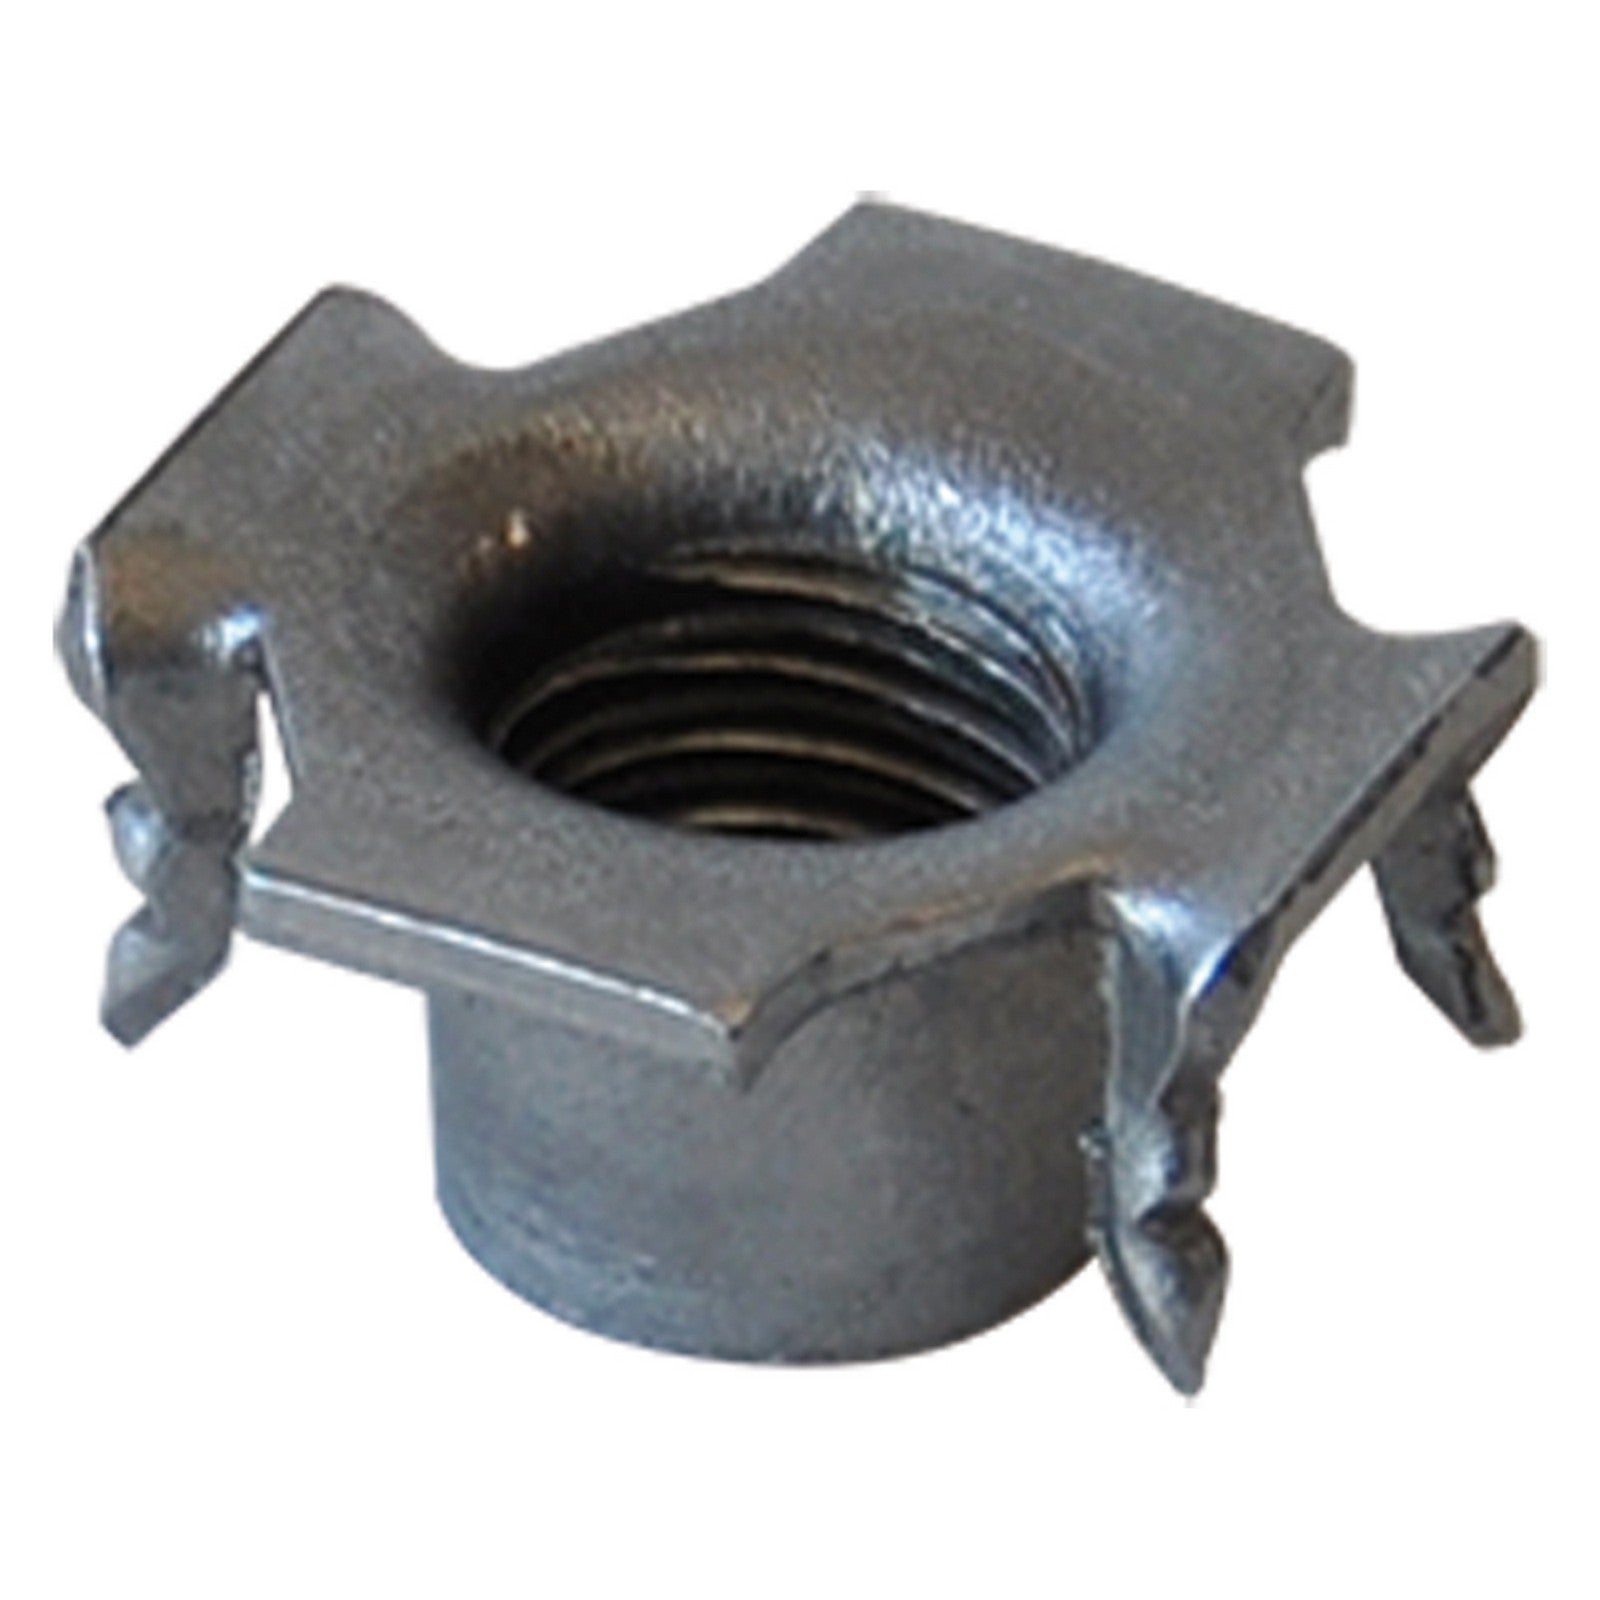 1blister fondello acciaio tipo ''ragno'' Ã¸mm 25 x h.12 - m10 pz 20 cod:ferx.38884nlm